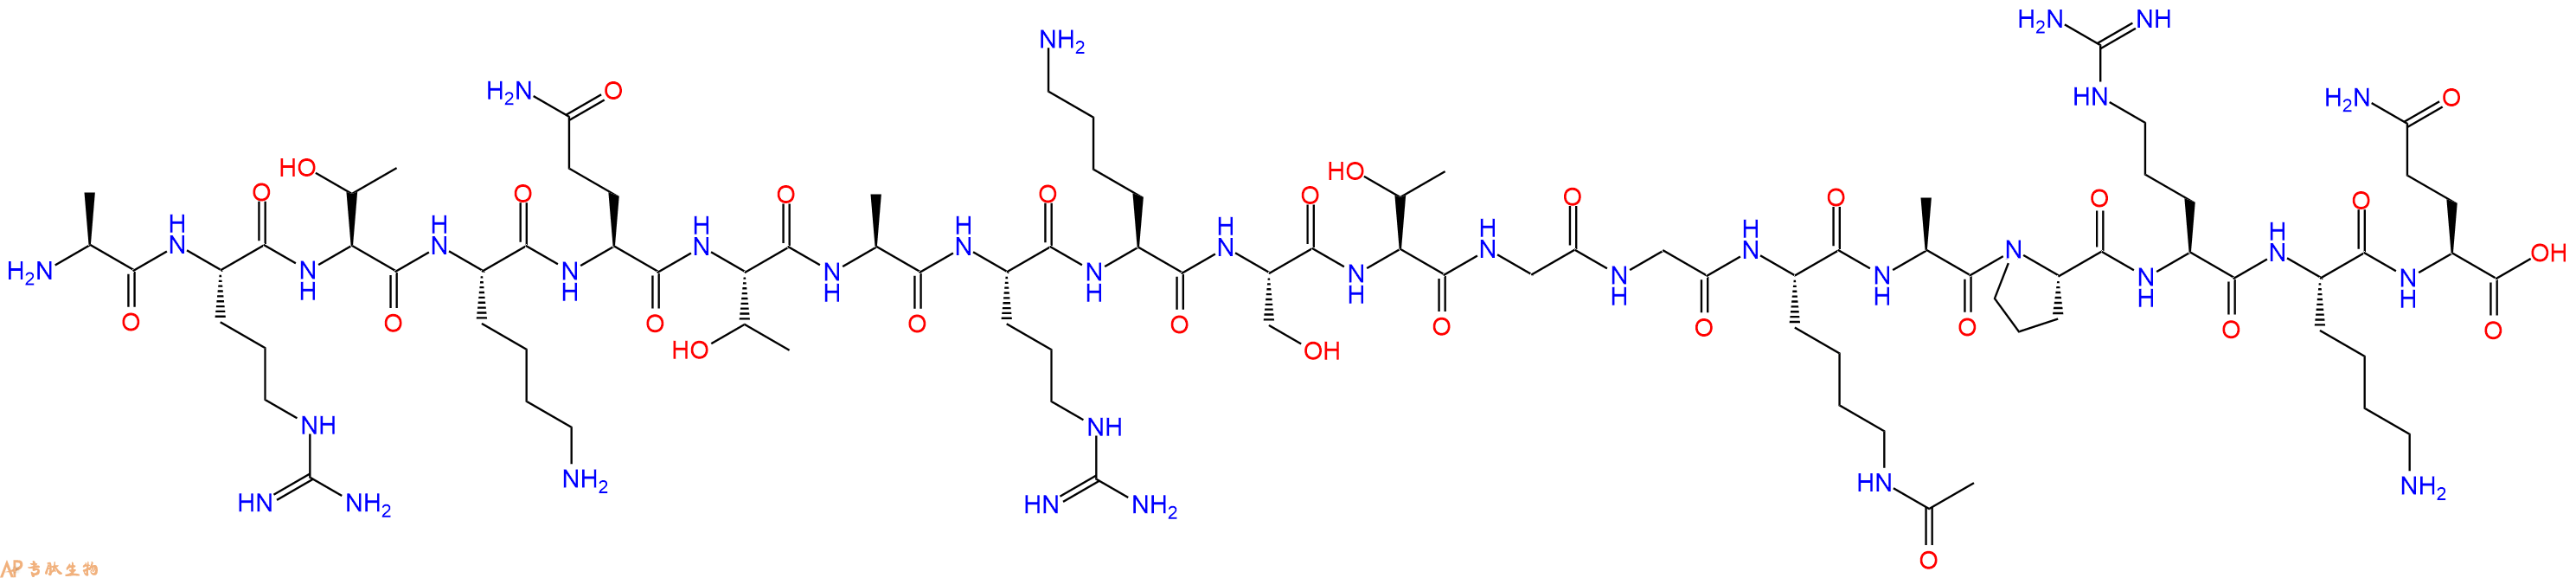 专肽生物产品组蛋白肽段[Lys(Ac)14]-Histone H3(1-19), H3K14(Ac)